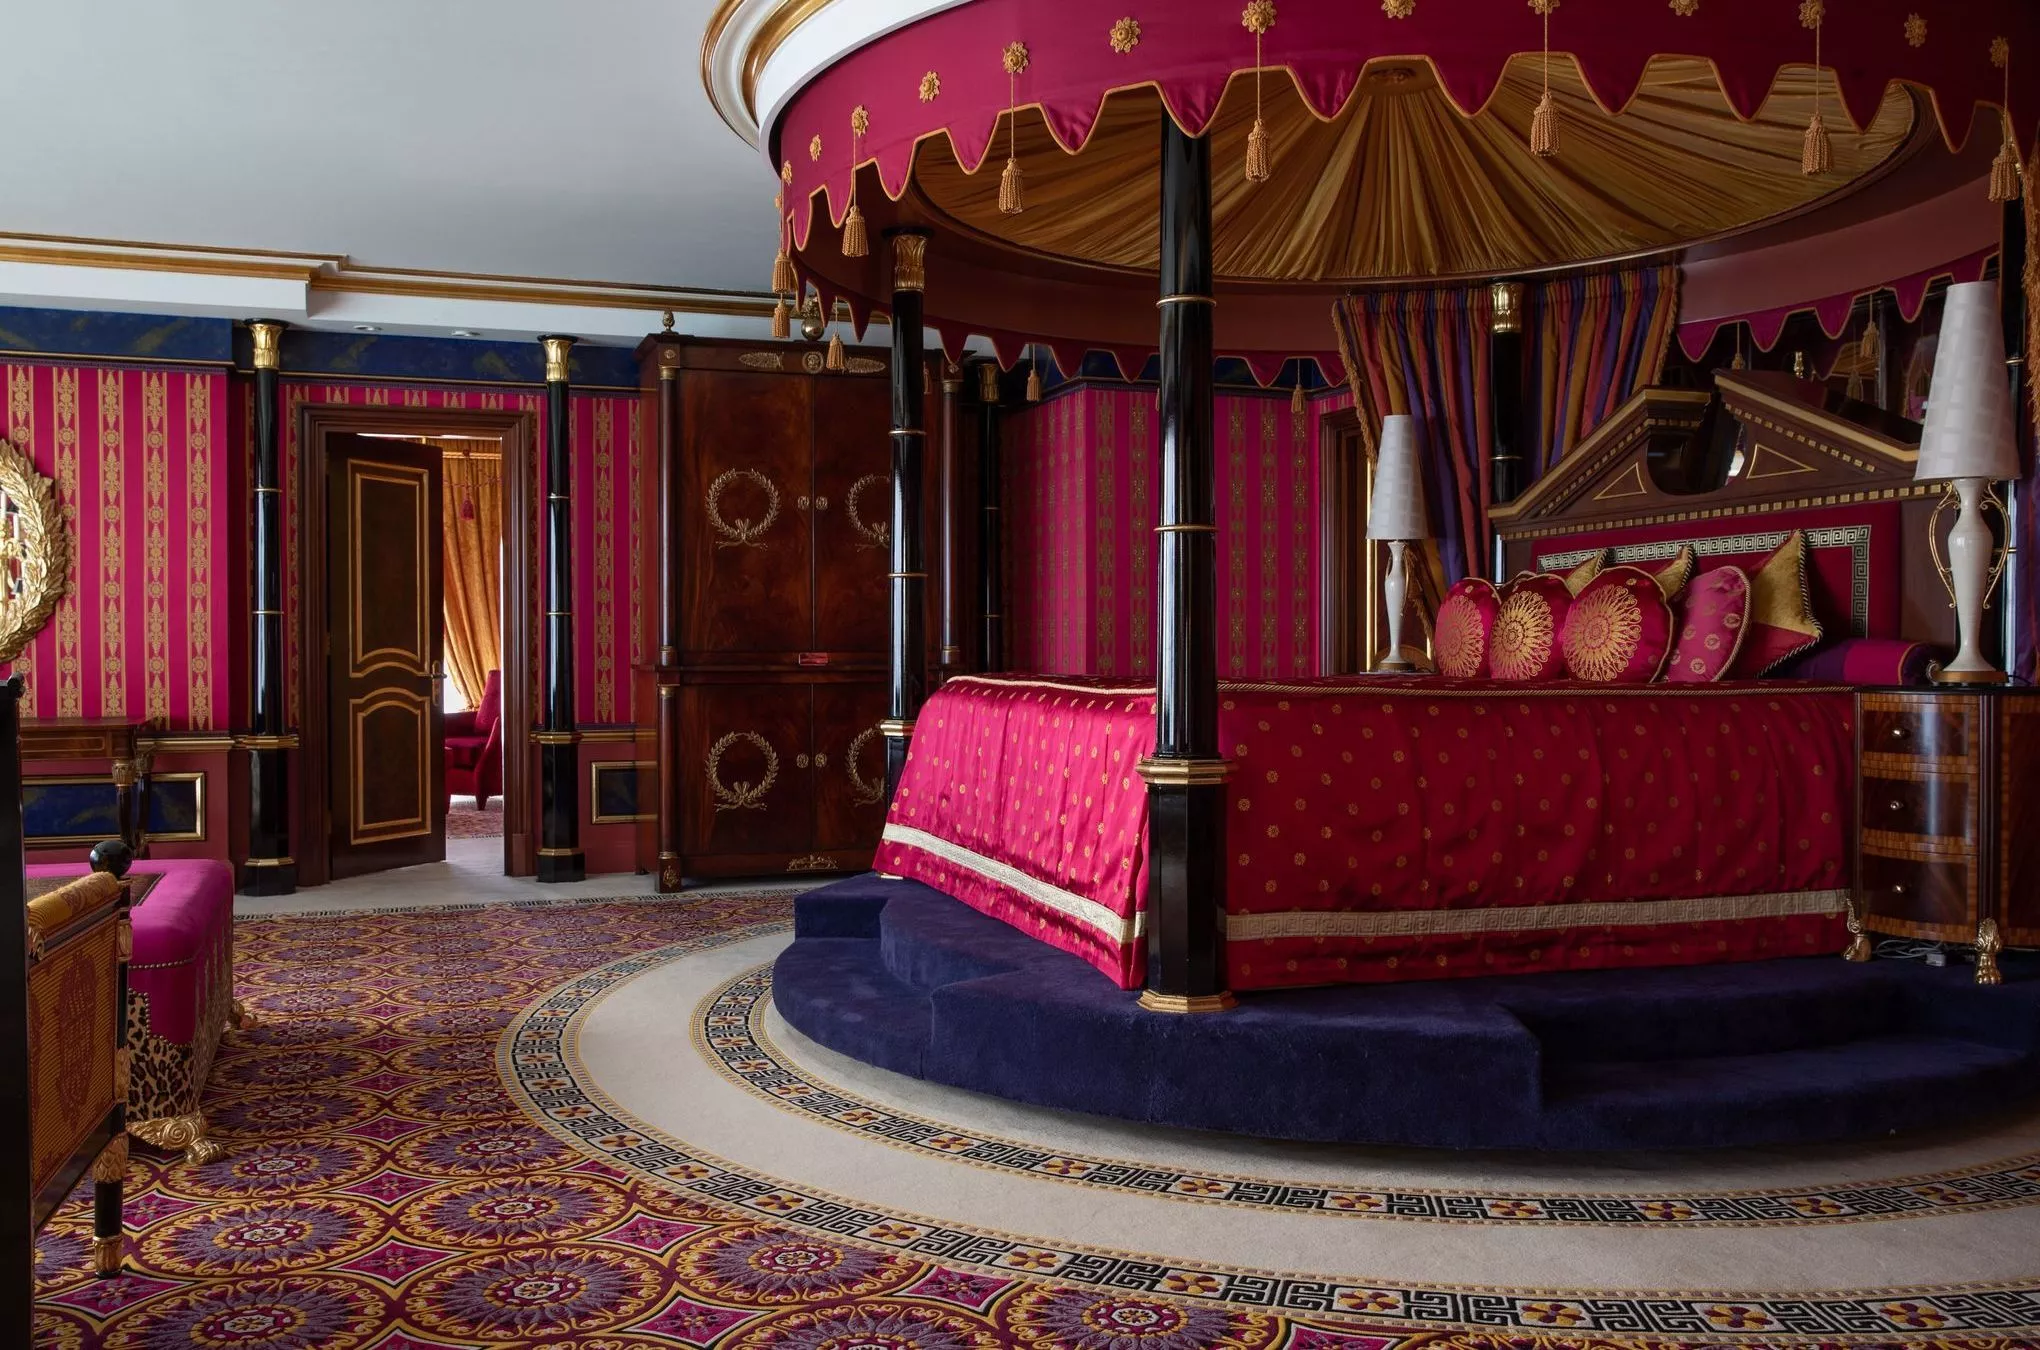 Königliches Schlafen unter einem Baldachin: kein Problem in der Royal Suite